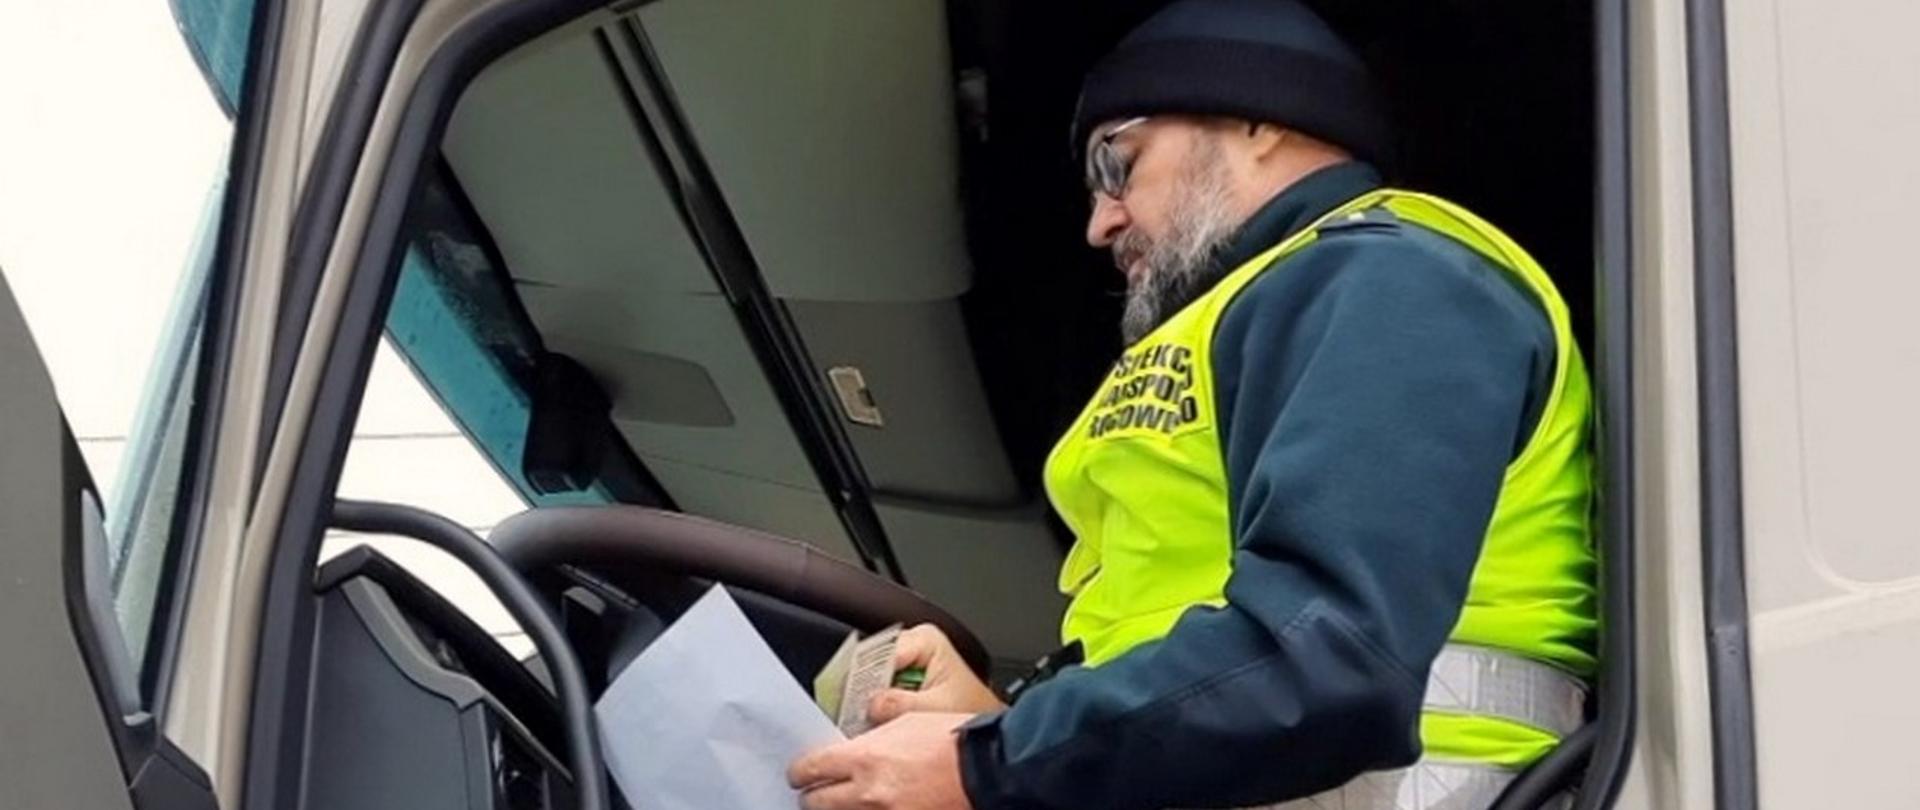 Inspektor siedzi na miejscu kierowcy w kabinie ciężarówki. W dłoni trzyma dokumenty.